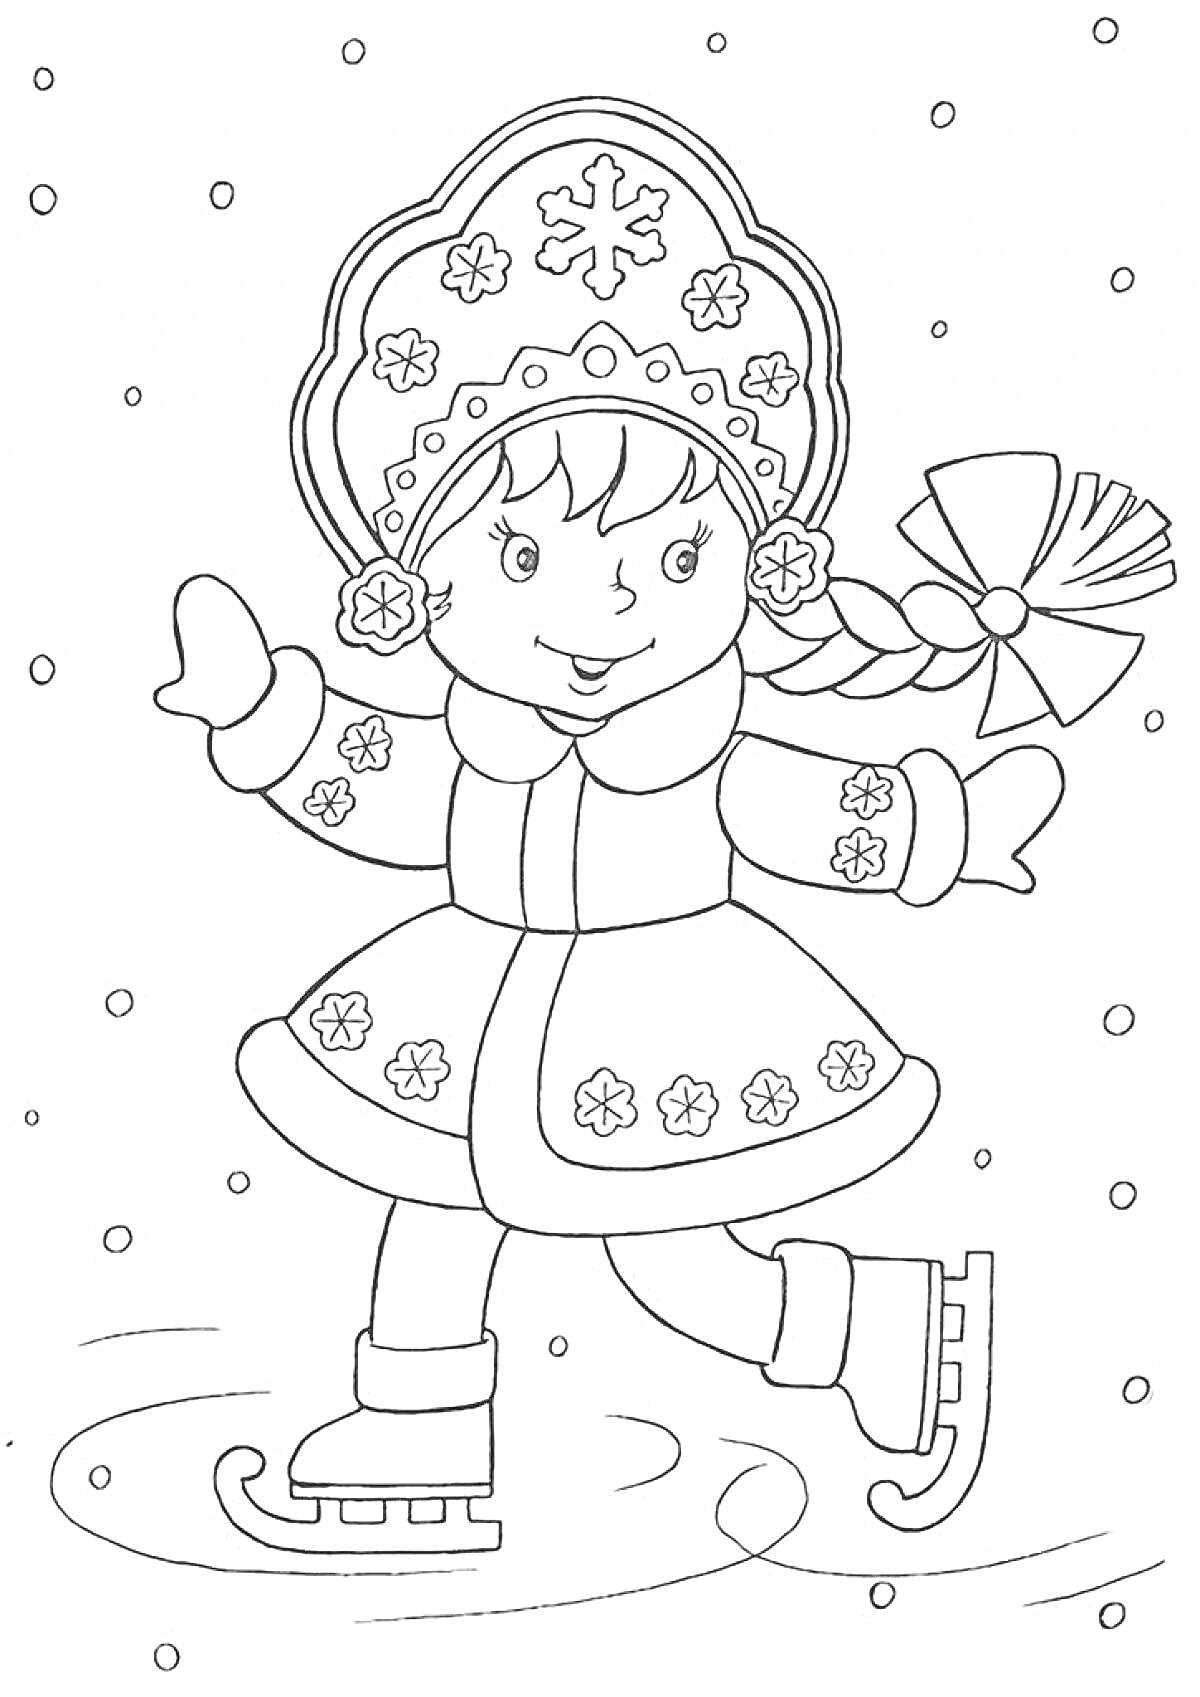 Девочка-фигуристка в шапке с узором на льду в снежный день